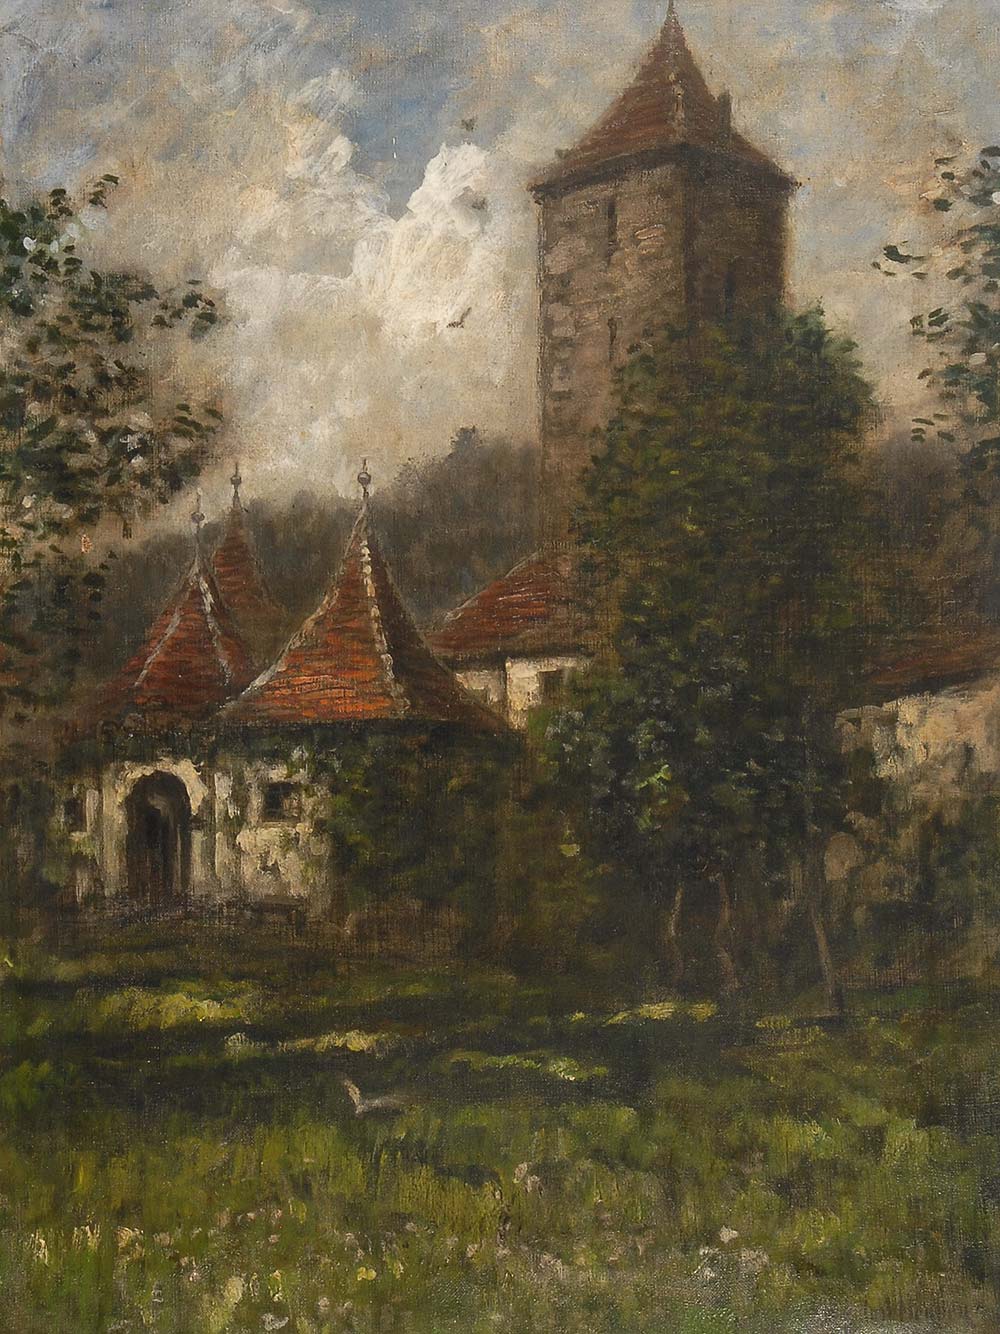 Heyden, Karl: Kloster am Waldrand. Öl/Leinwand, rechts unten signiert. Gebäudekomplex mit Turm am